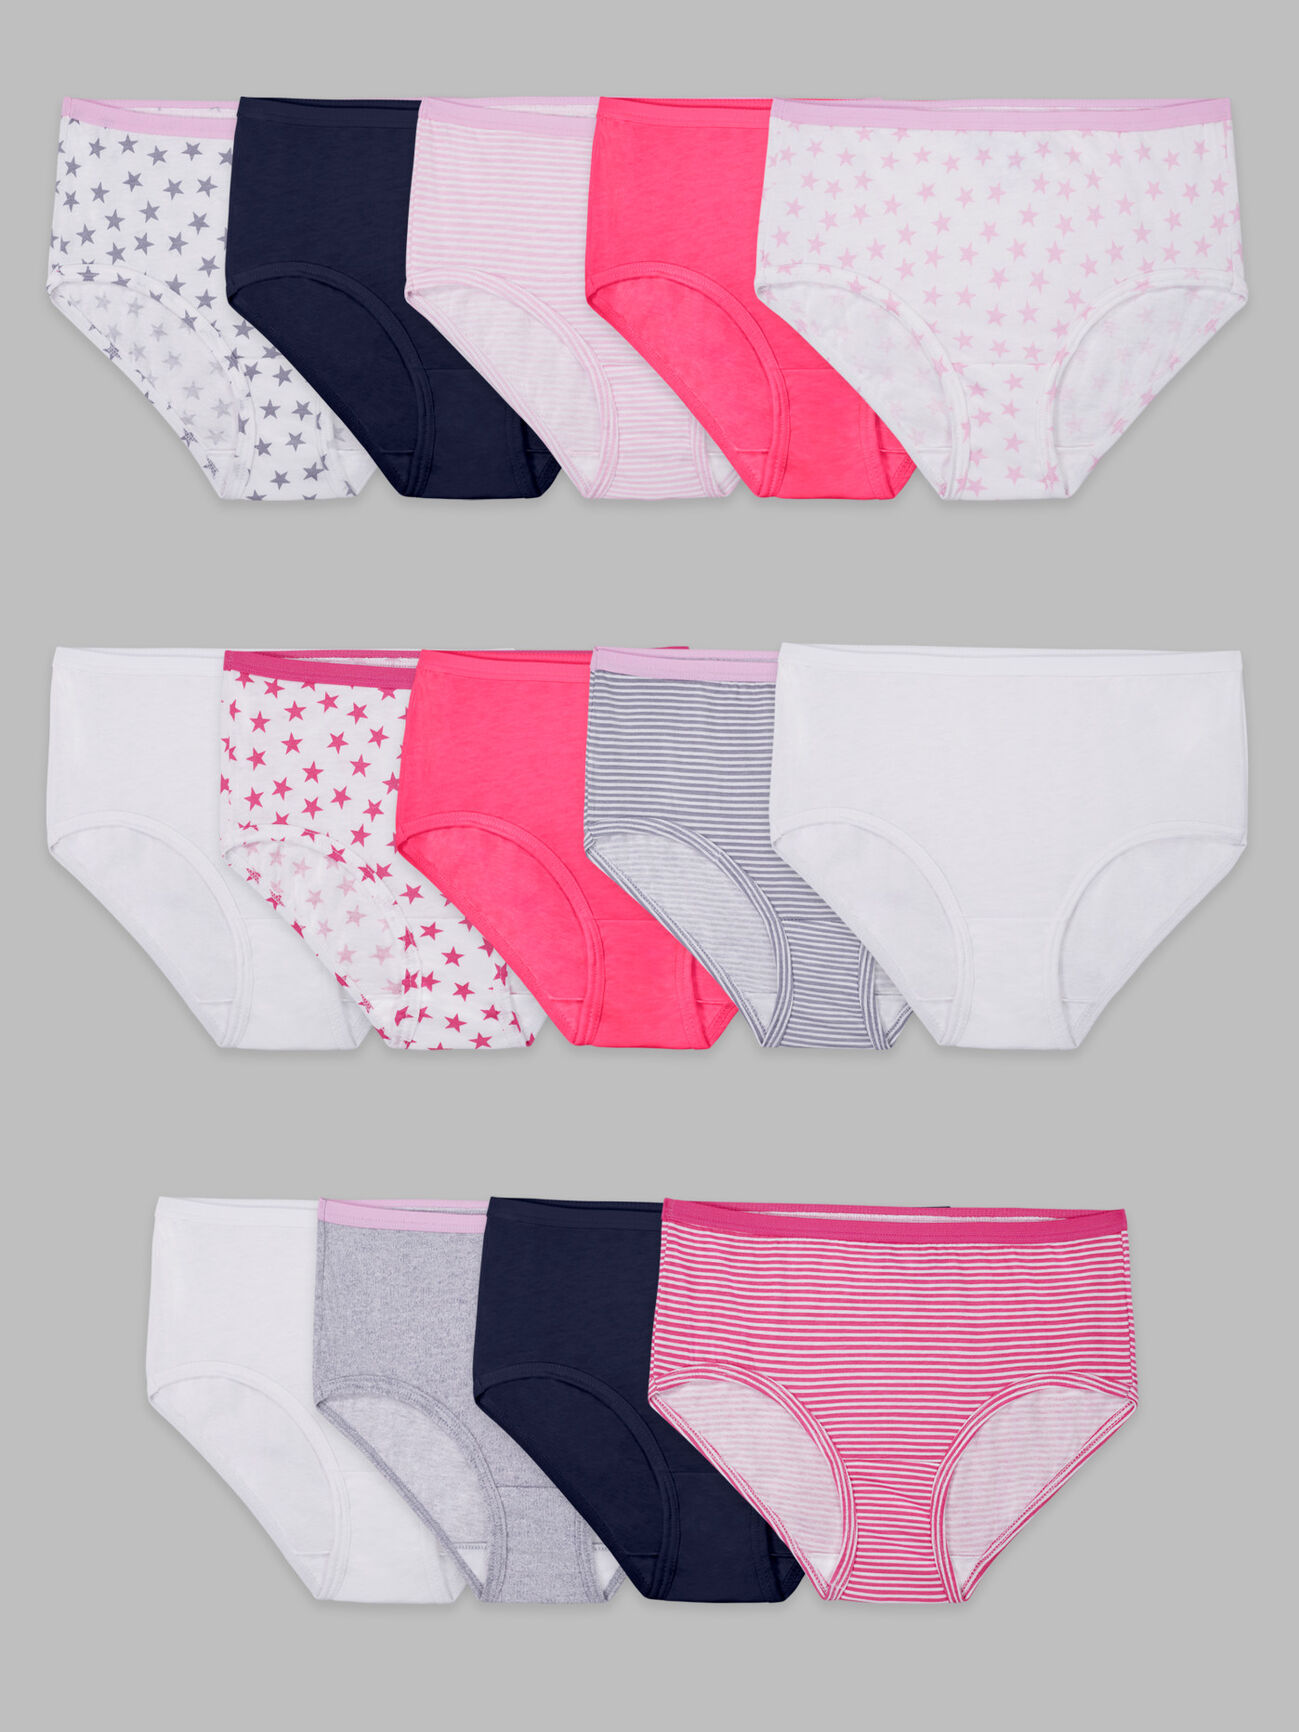 Girls' Underwear, Briefs, Socks & More